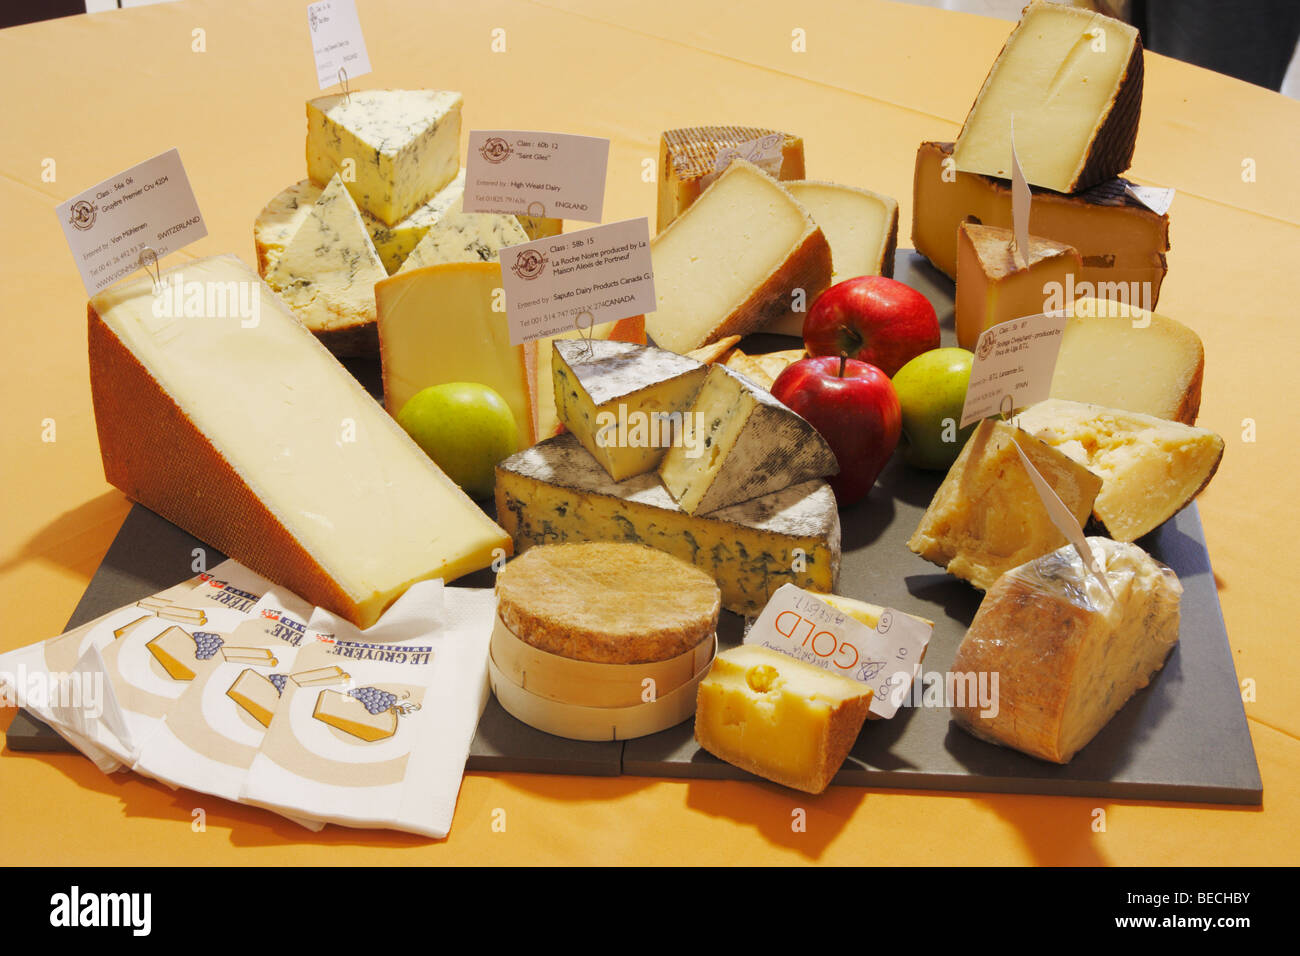 Medal winning cheeses at the World cheese awards 2009 in Las Palmas, Gran Canaria Stock Photo